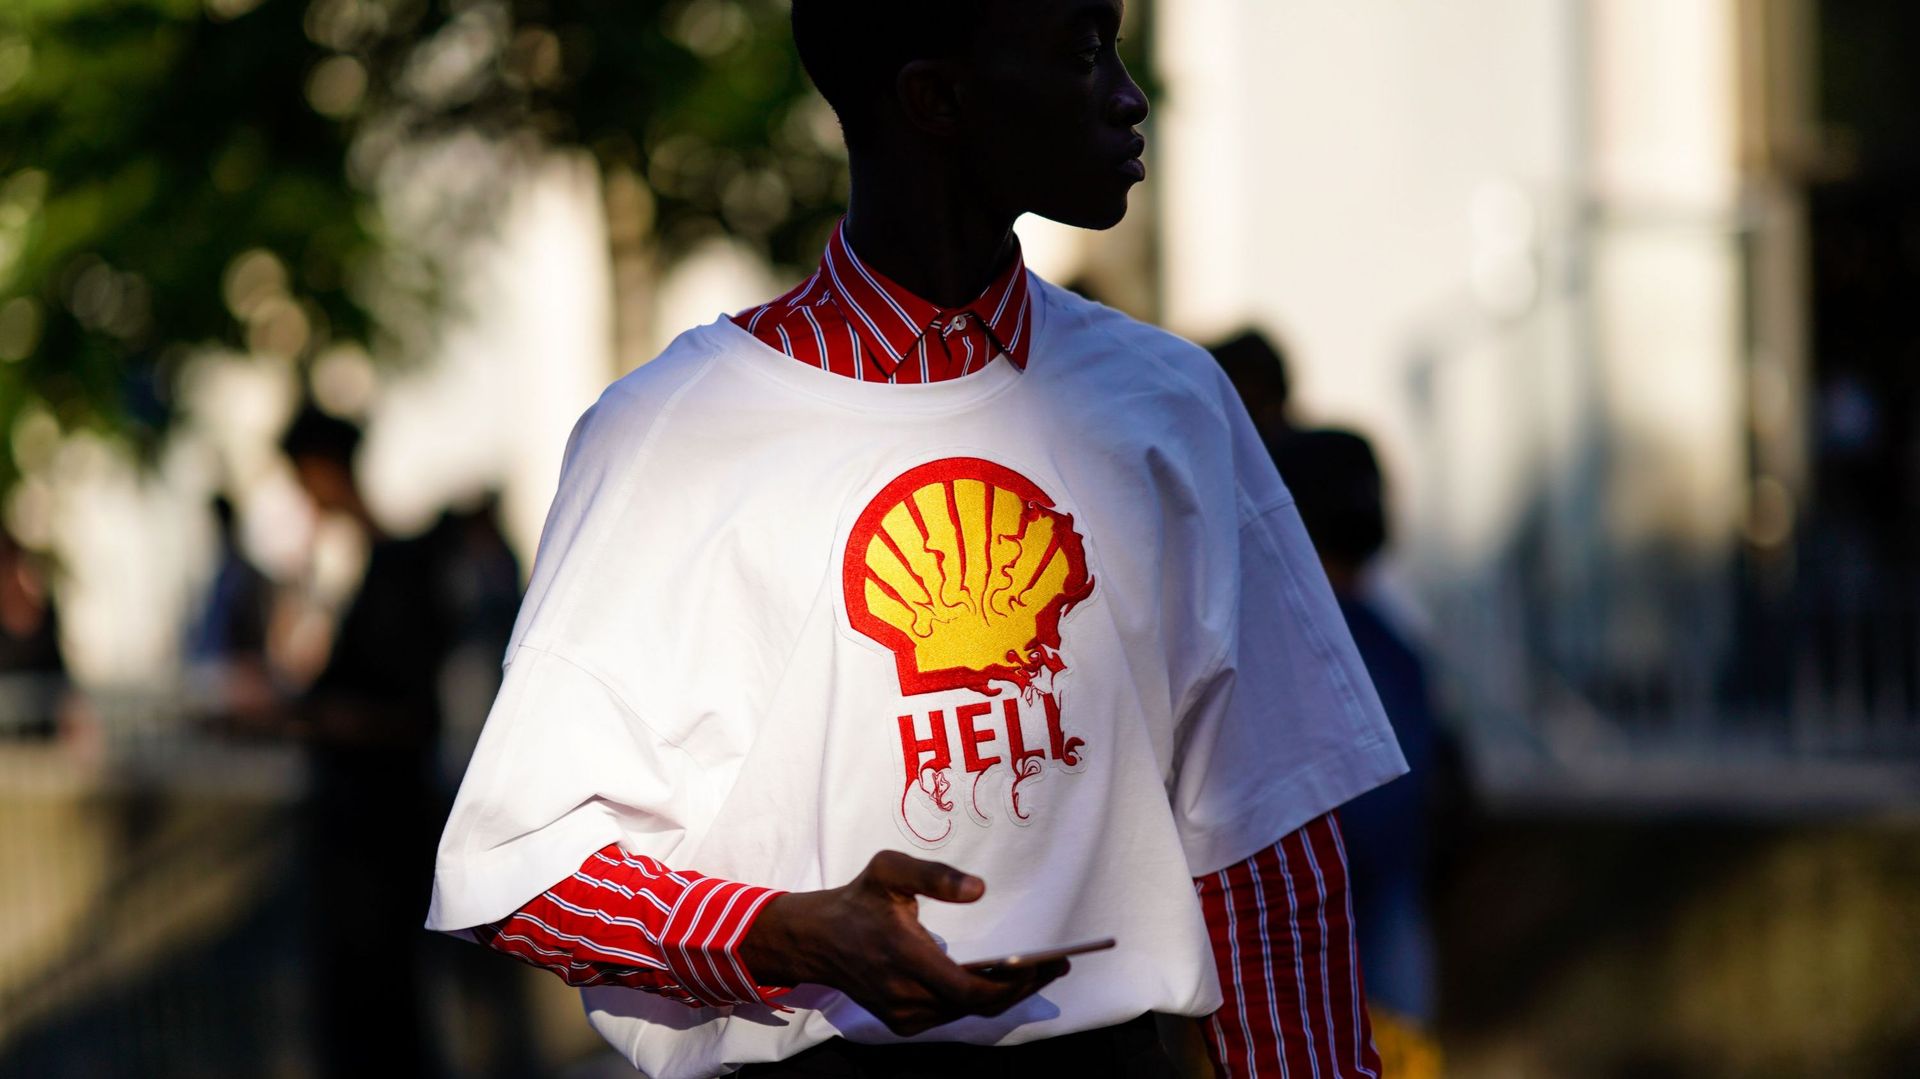 Une invitée portant un t-shirt blanc avec le logo Shell et le mot "hell" pendant la Fashion Week de Paris en juin 2018 à Paris (illustration)